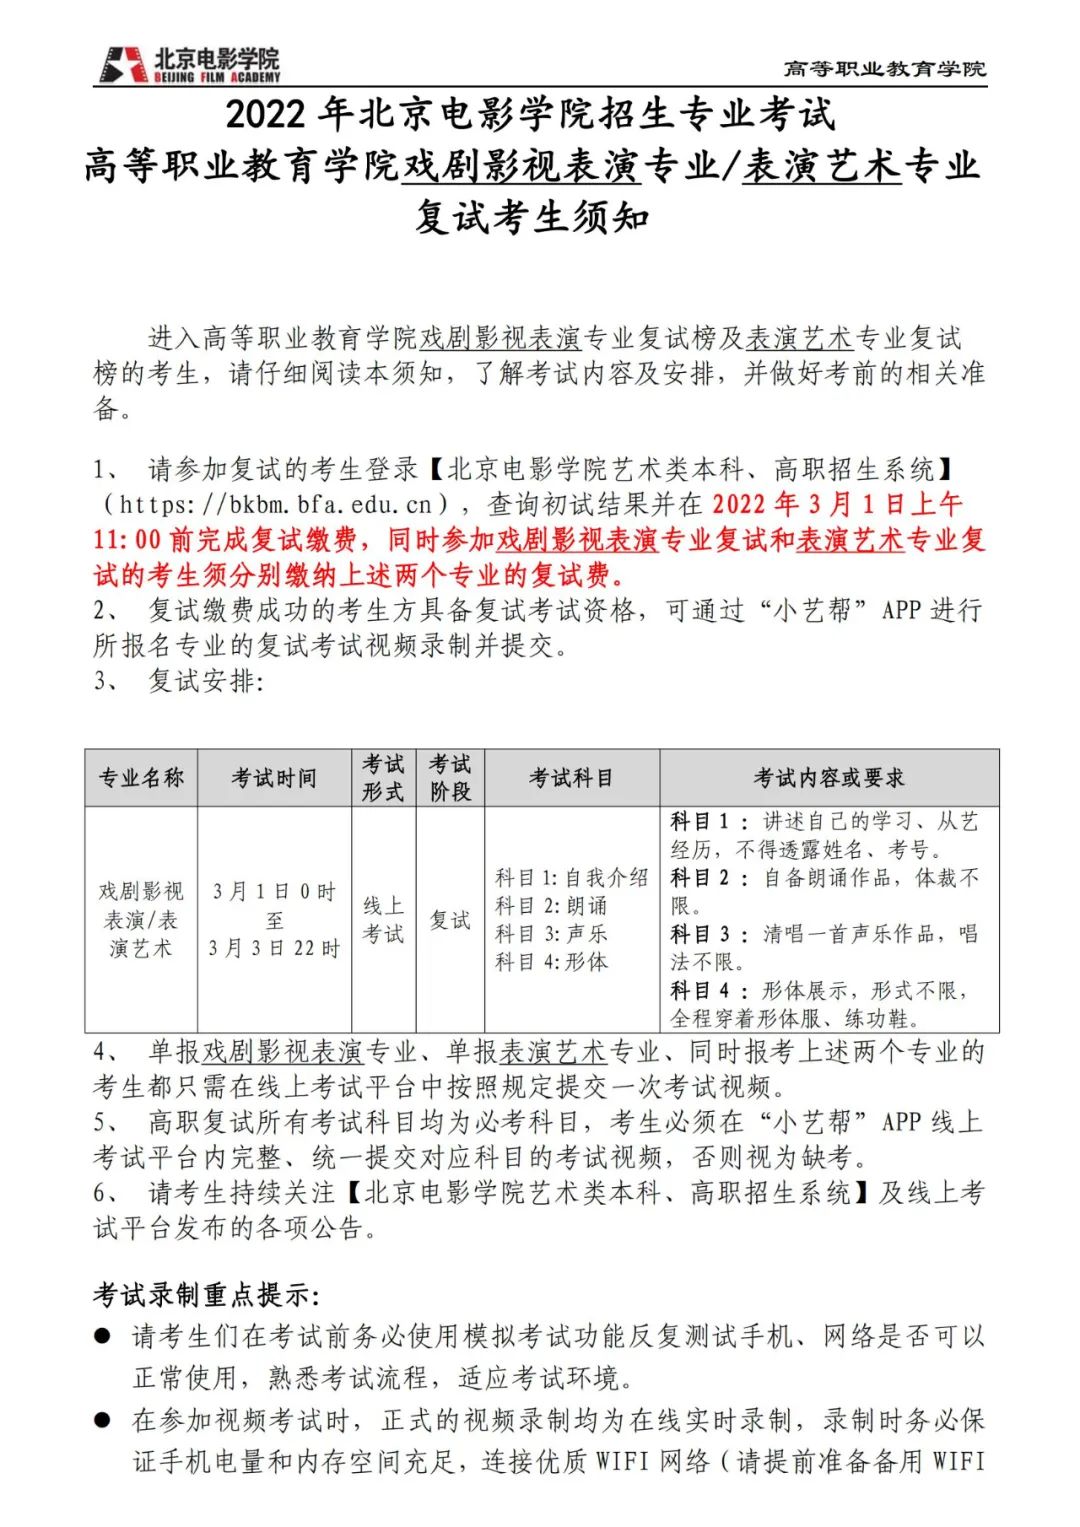 中央戏剧学院、北京电影学院2022初试结果已发布 (http://www.cngai.com/) 艺教资讯 第79张